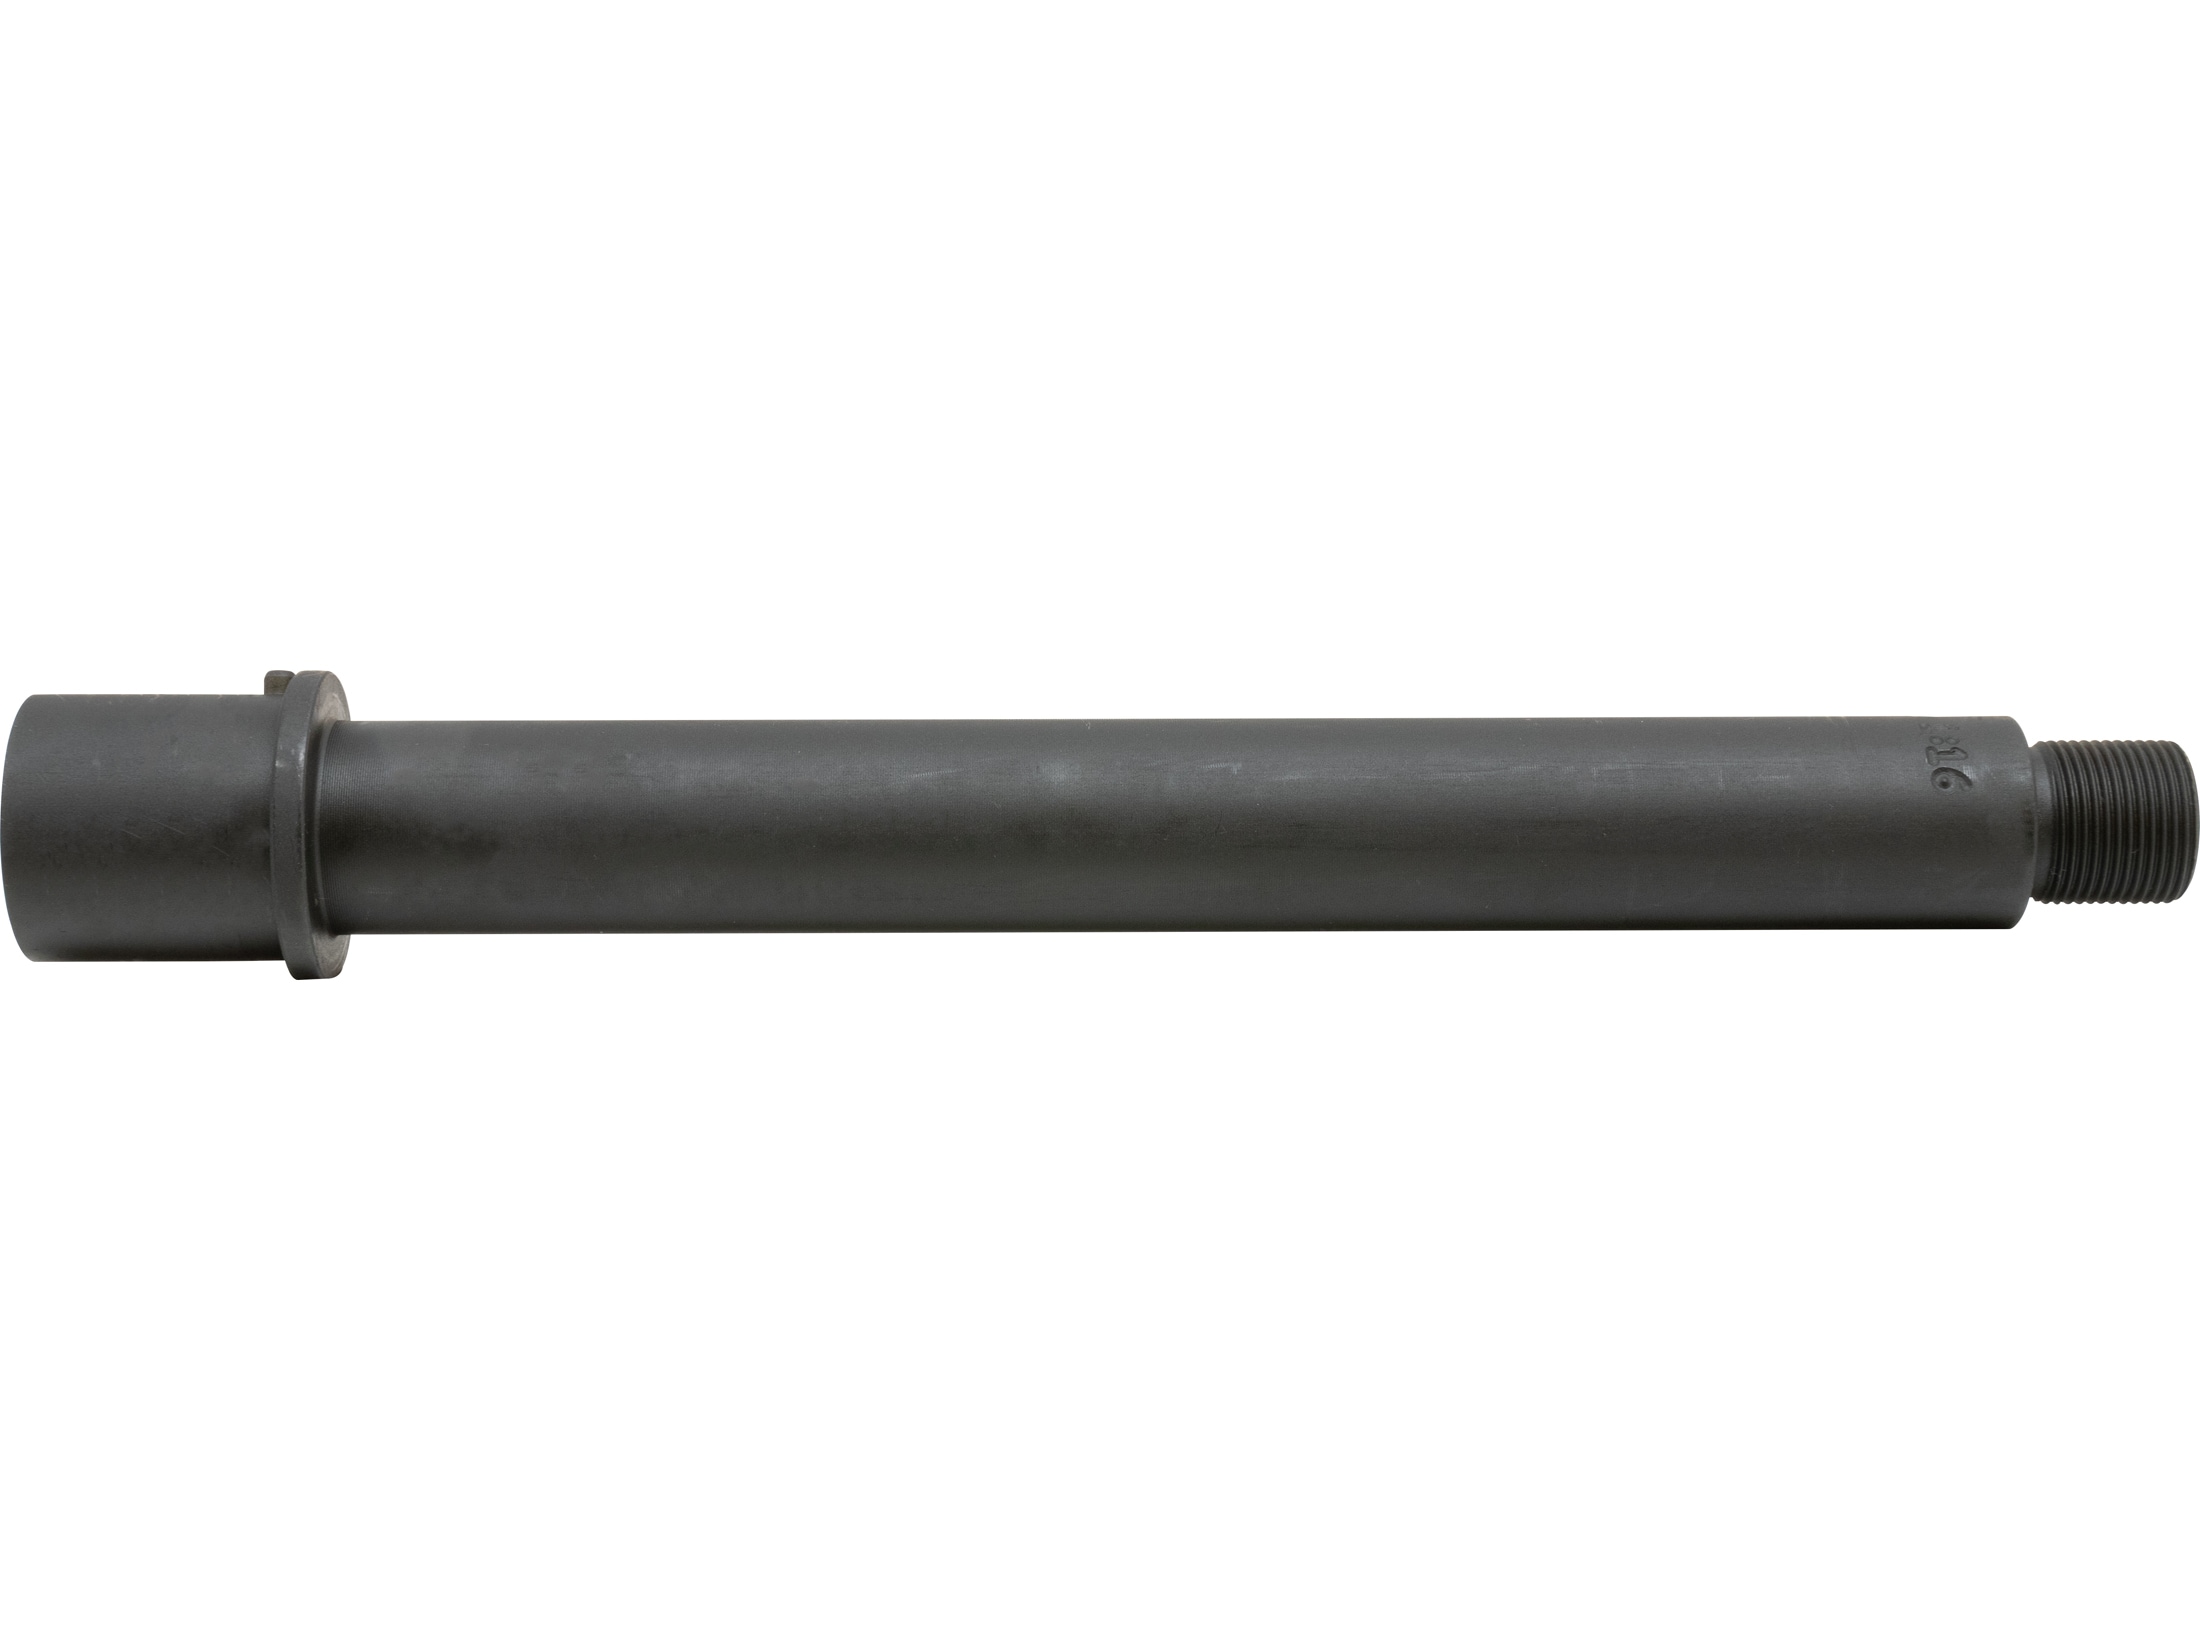 AR-STONER Barrel AR-15 45 ACP (.578-28 Thread) 1 16 Twist 8 Chrome.